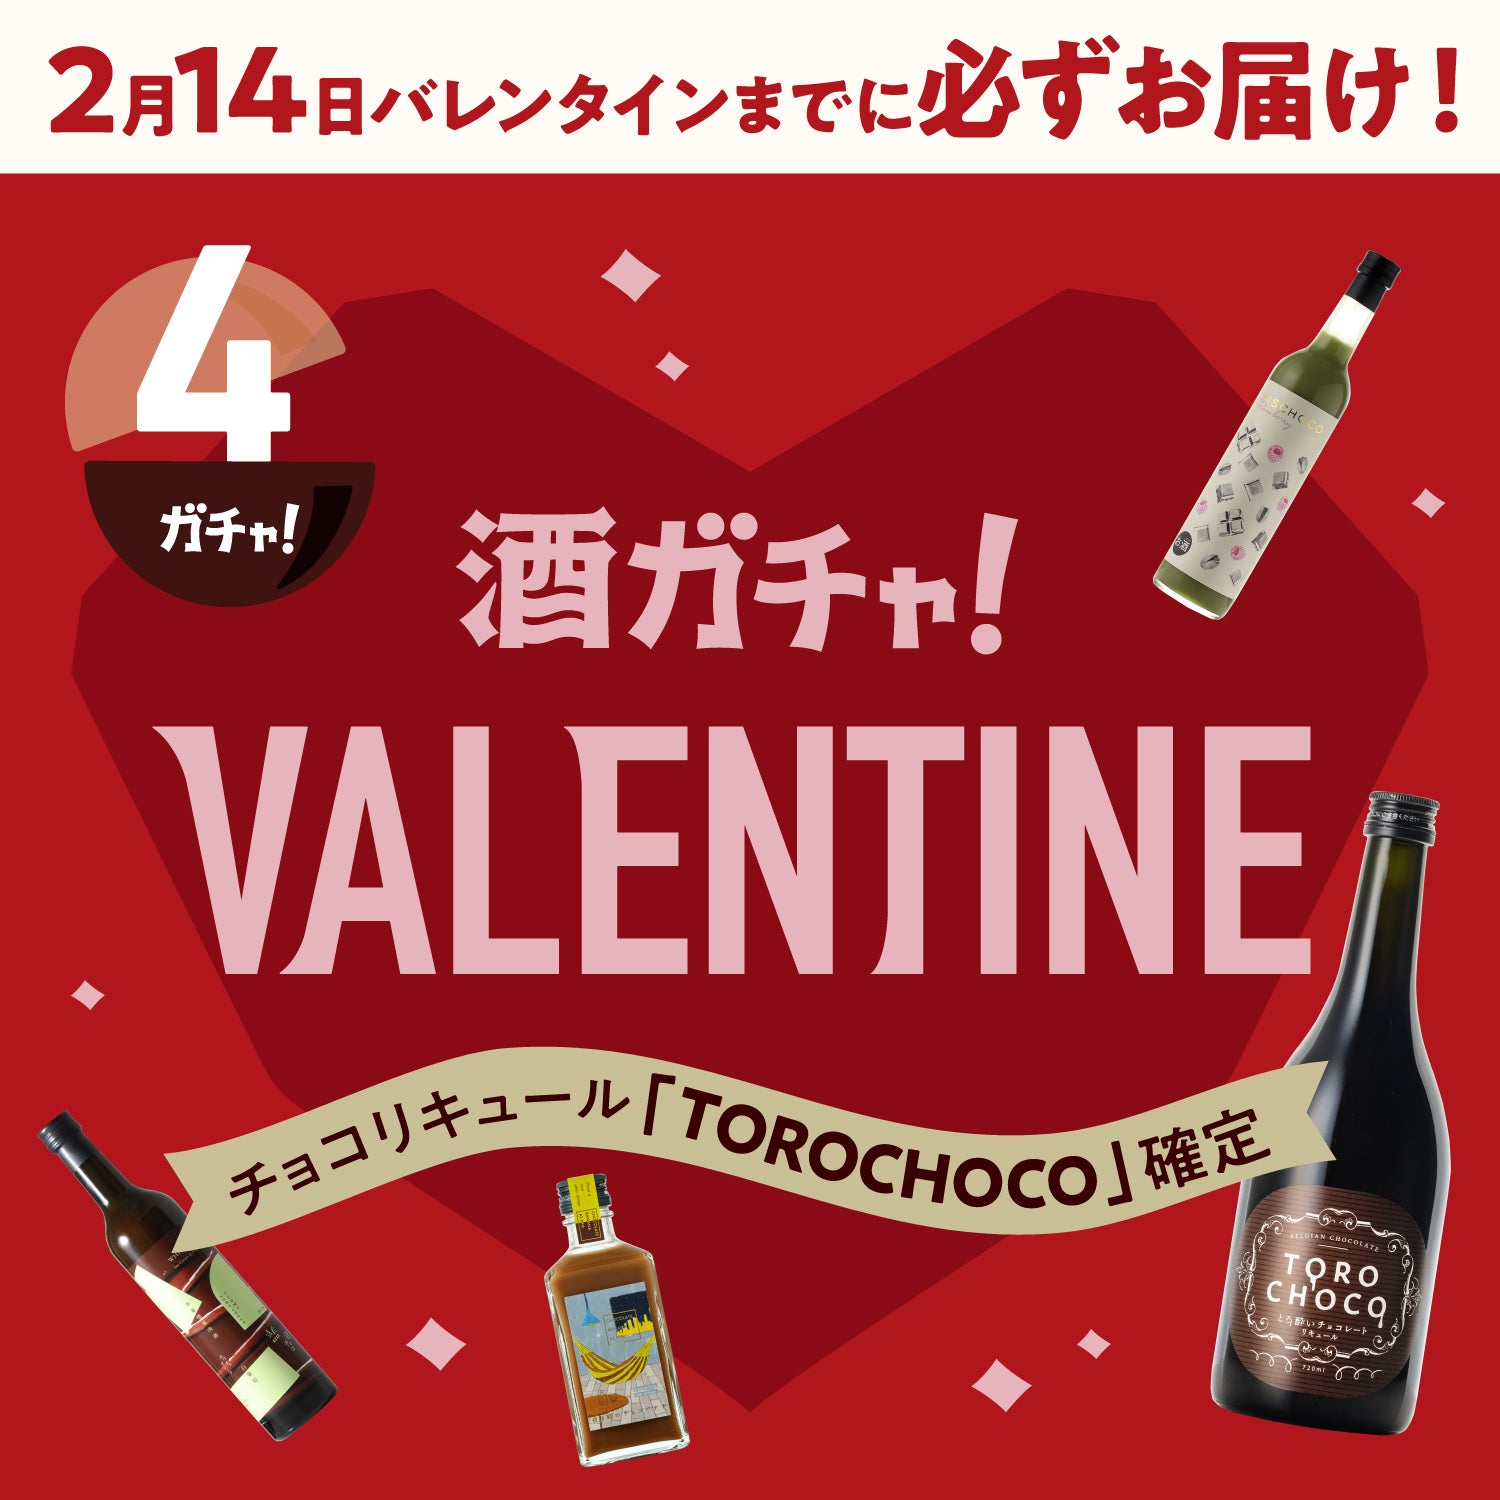 【バレンタインまでにお届け】TOROCHOCO確定4連酒ガチャ